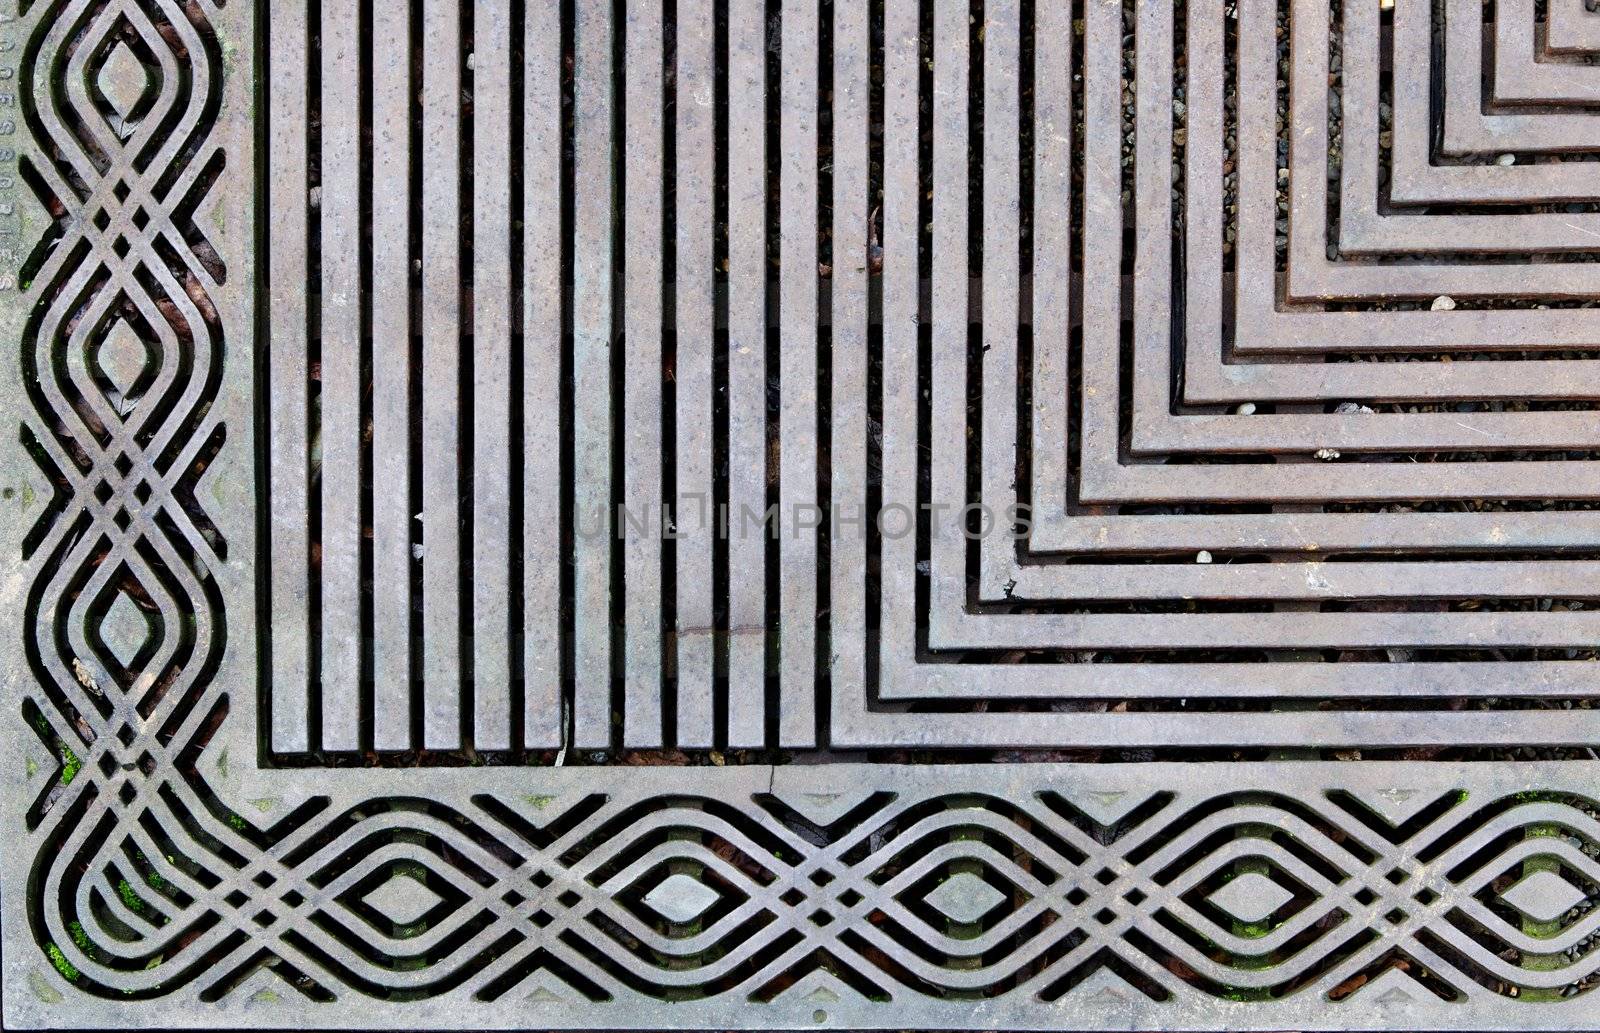 Corner of an ornately designed steek grating on the sidewalk